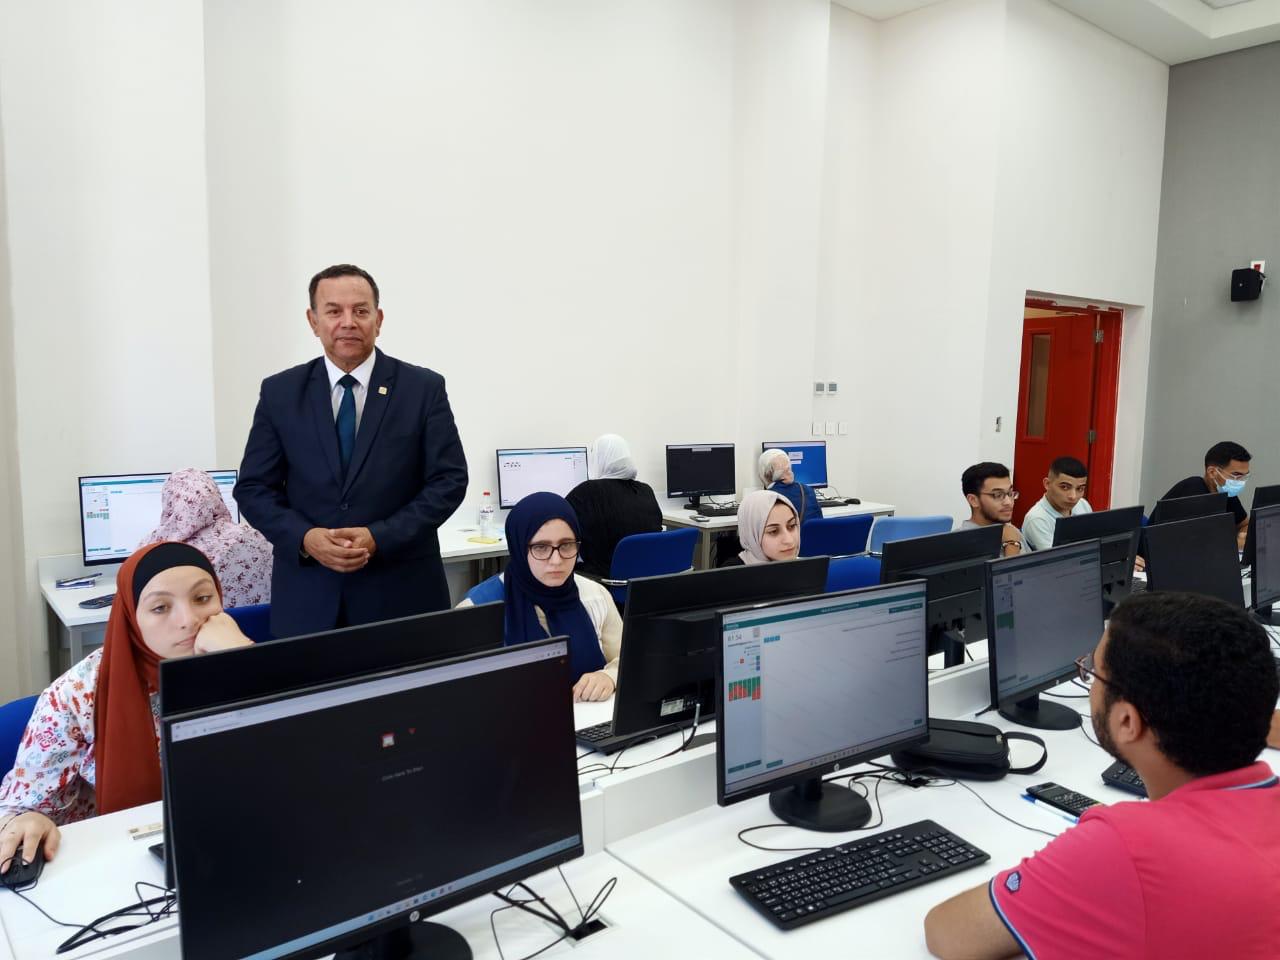 جامعة المنصورة الجديدة تفتتح معرض التعليم الدائم